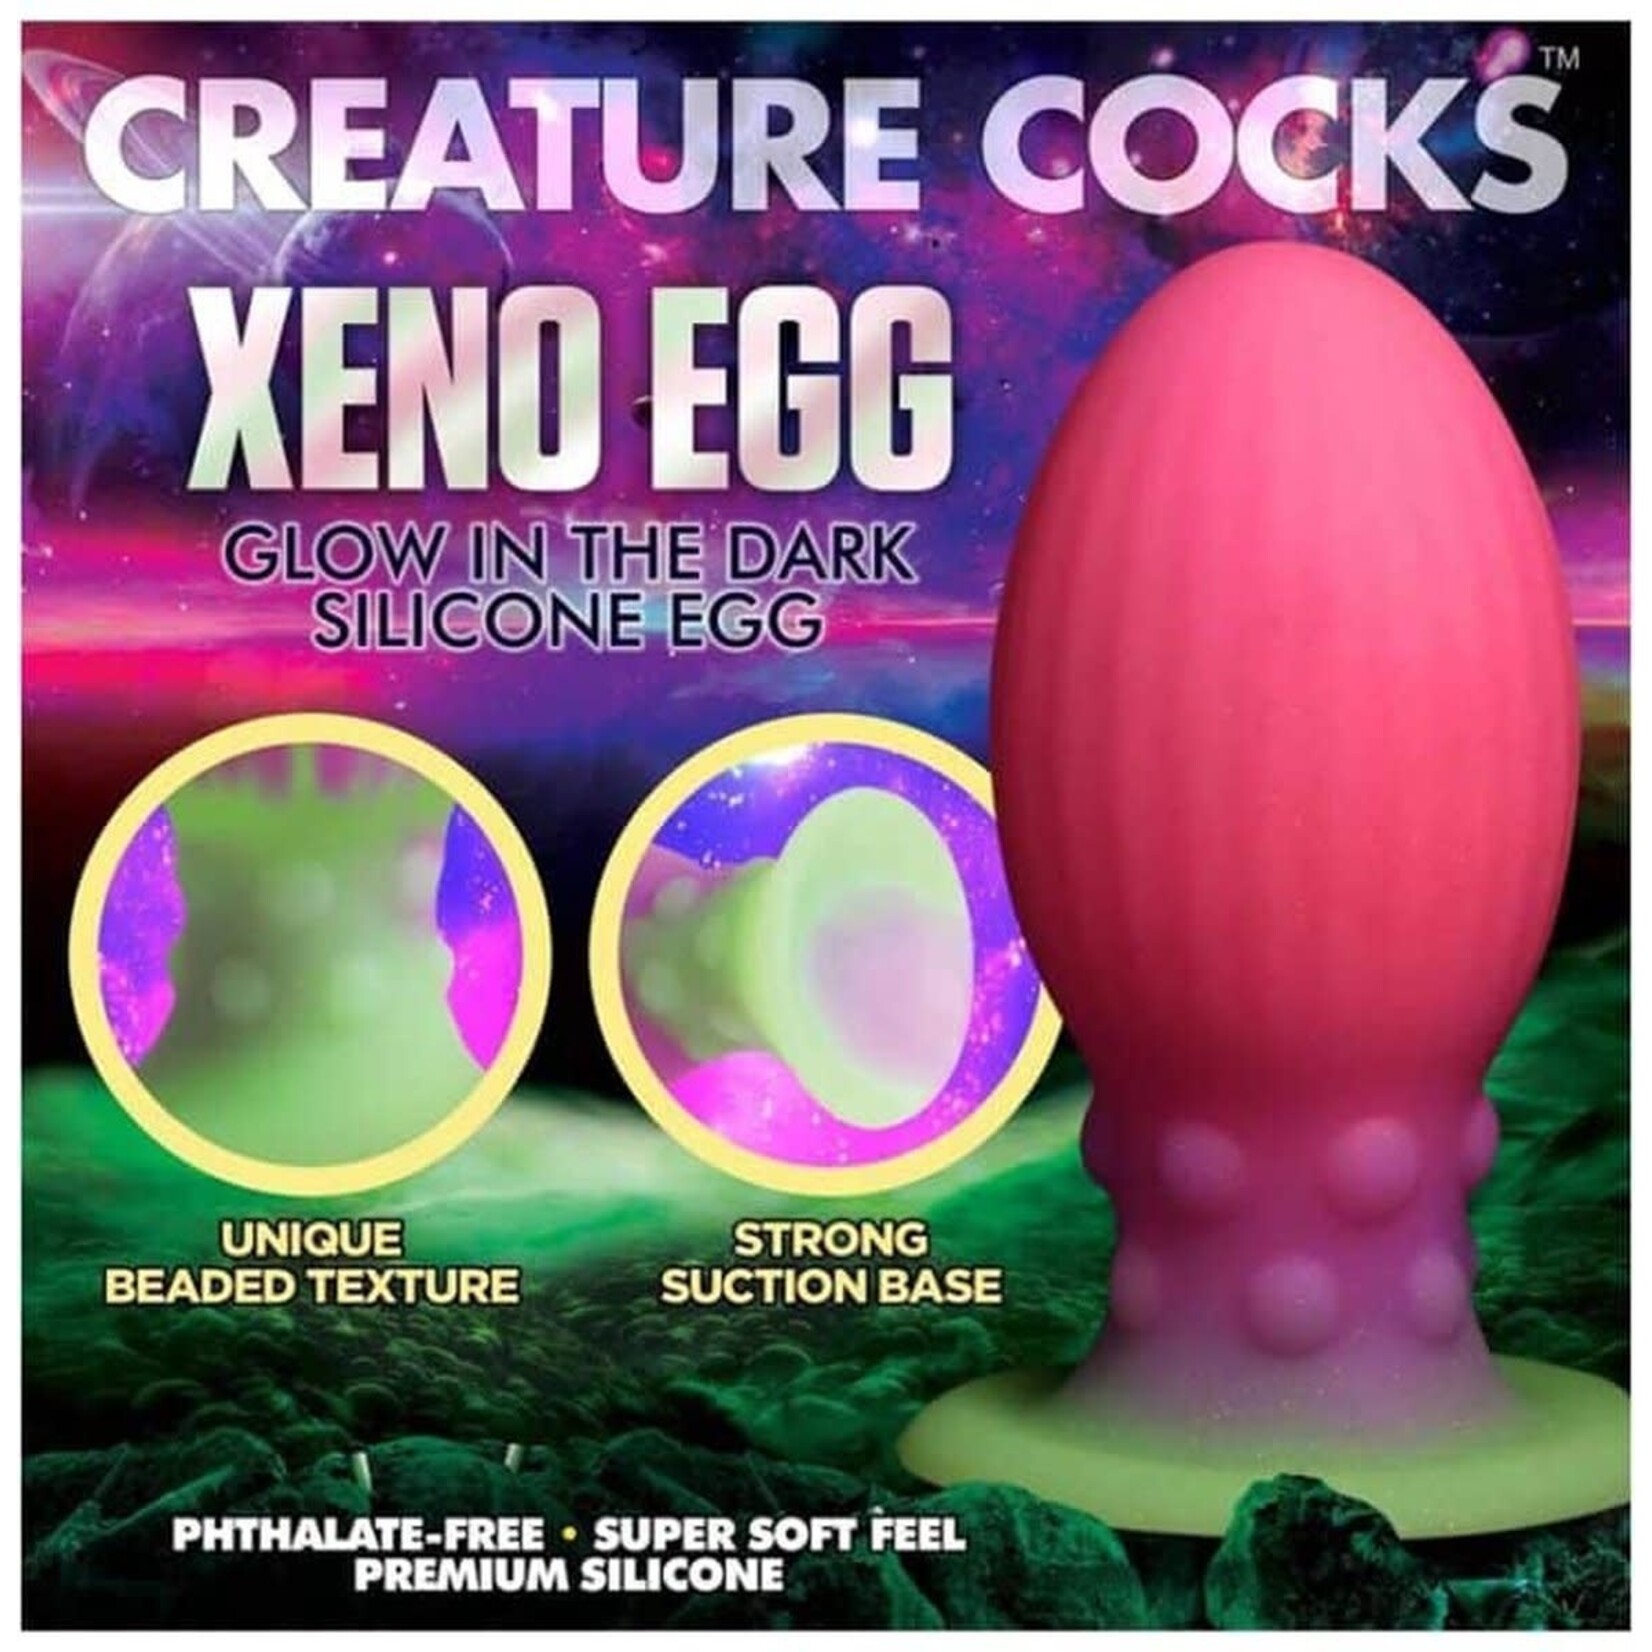 CREATURE COCKS CREATURE COCKS - XL XENO EGG GLOW IN THE DARK SILICONE EGG